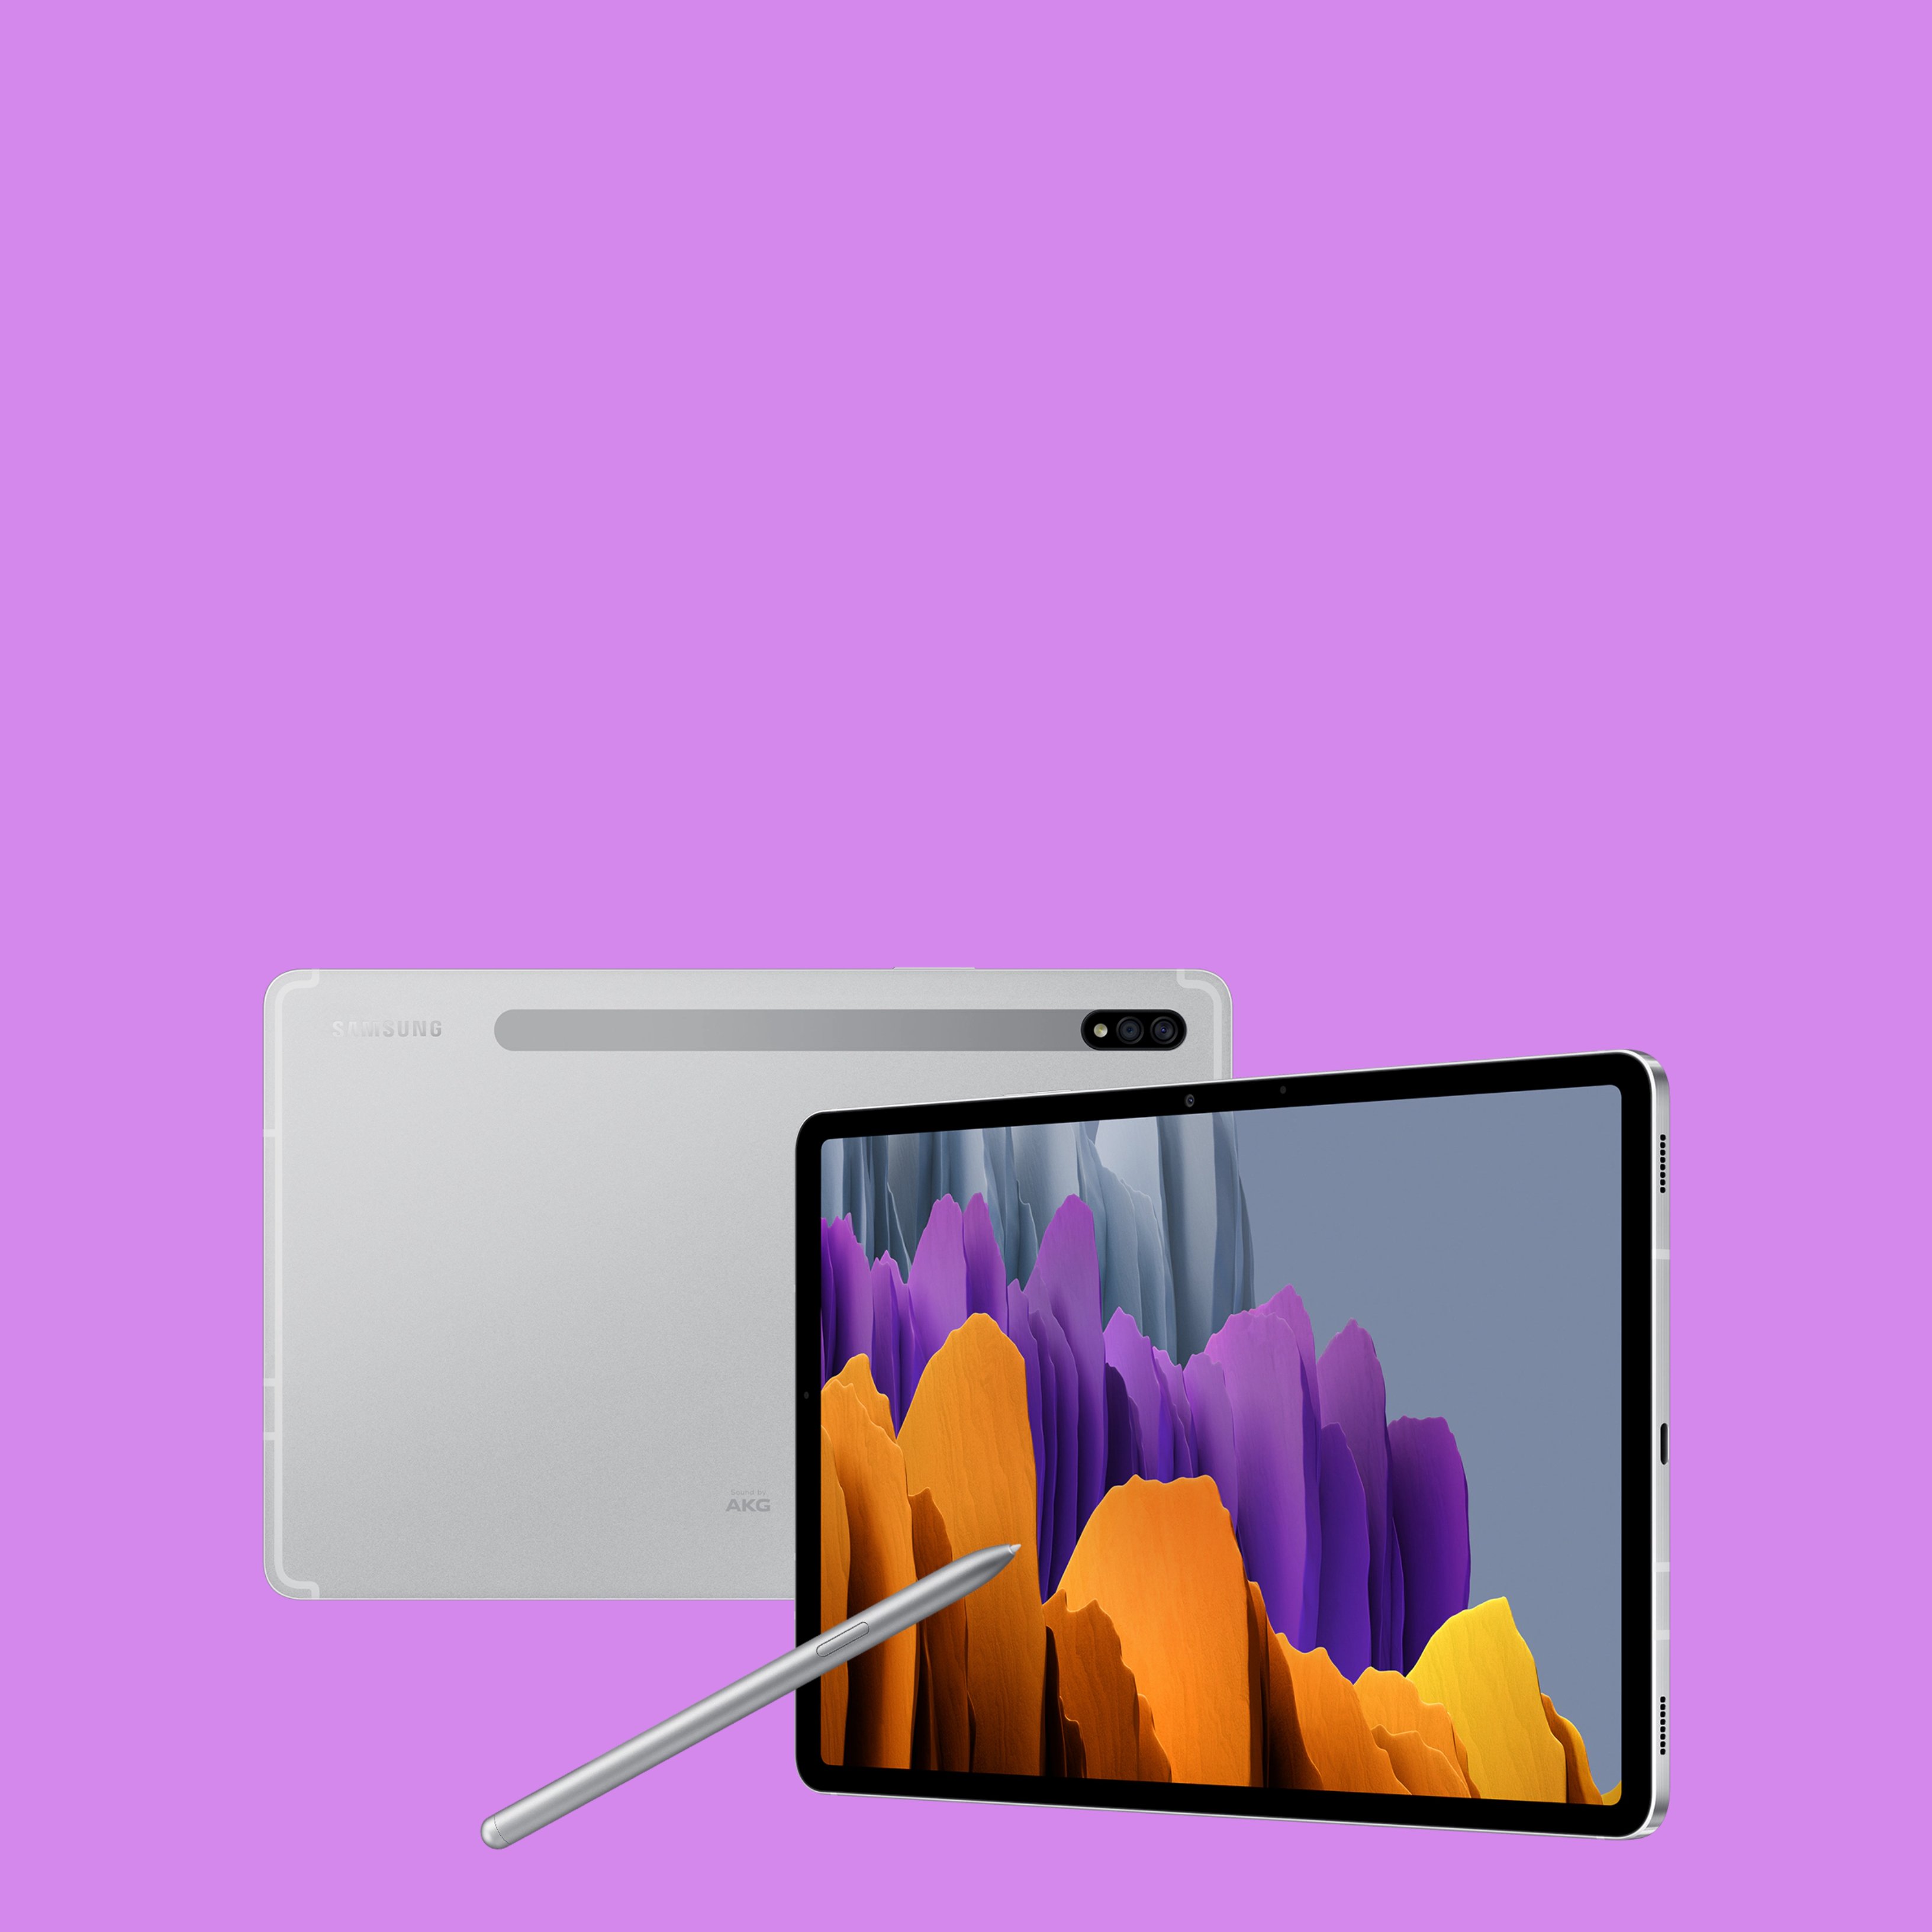 Tauletes Samsung Tab S7, alternatives reals als iPad Pro a millor preu